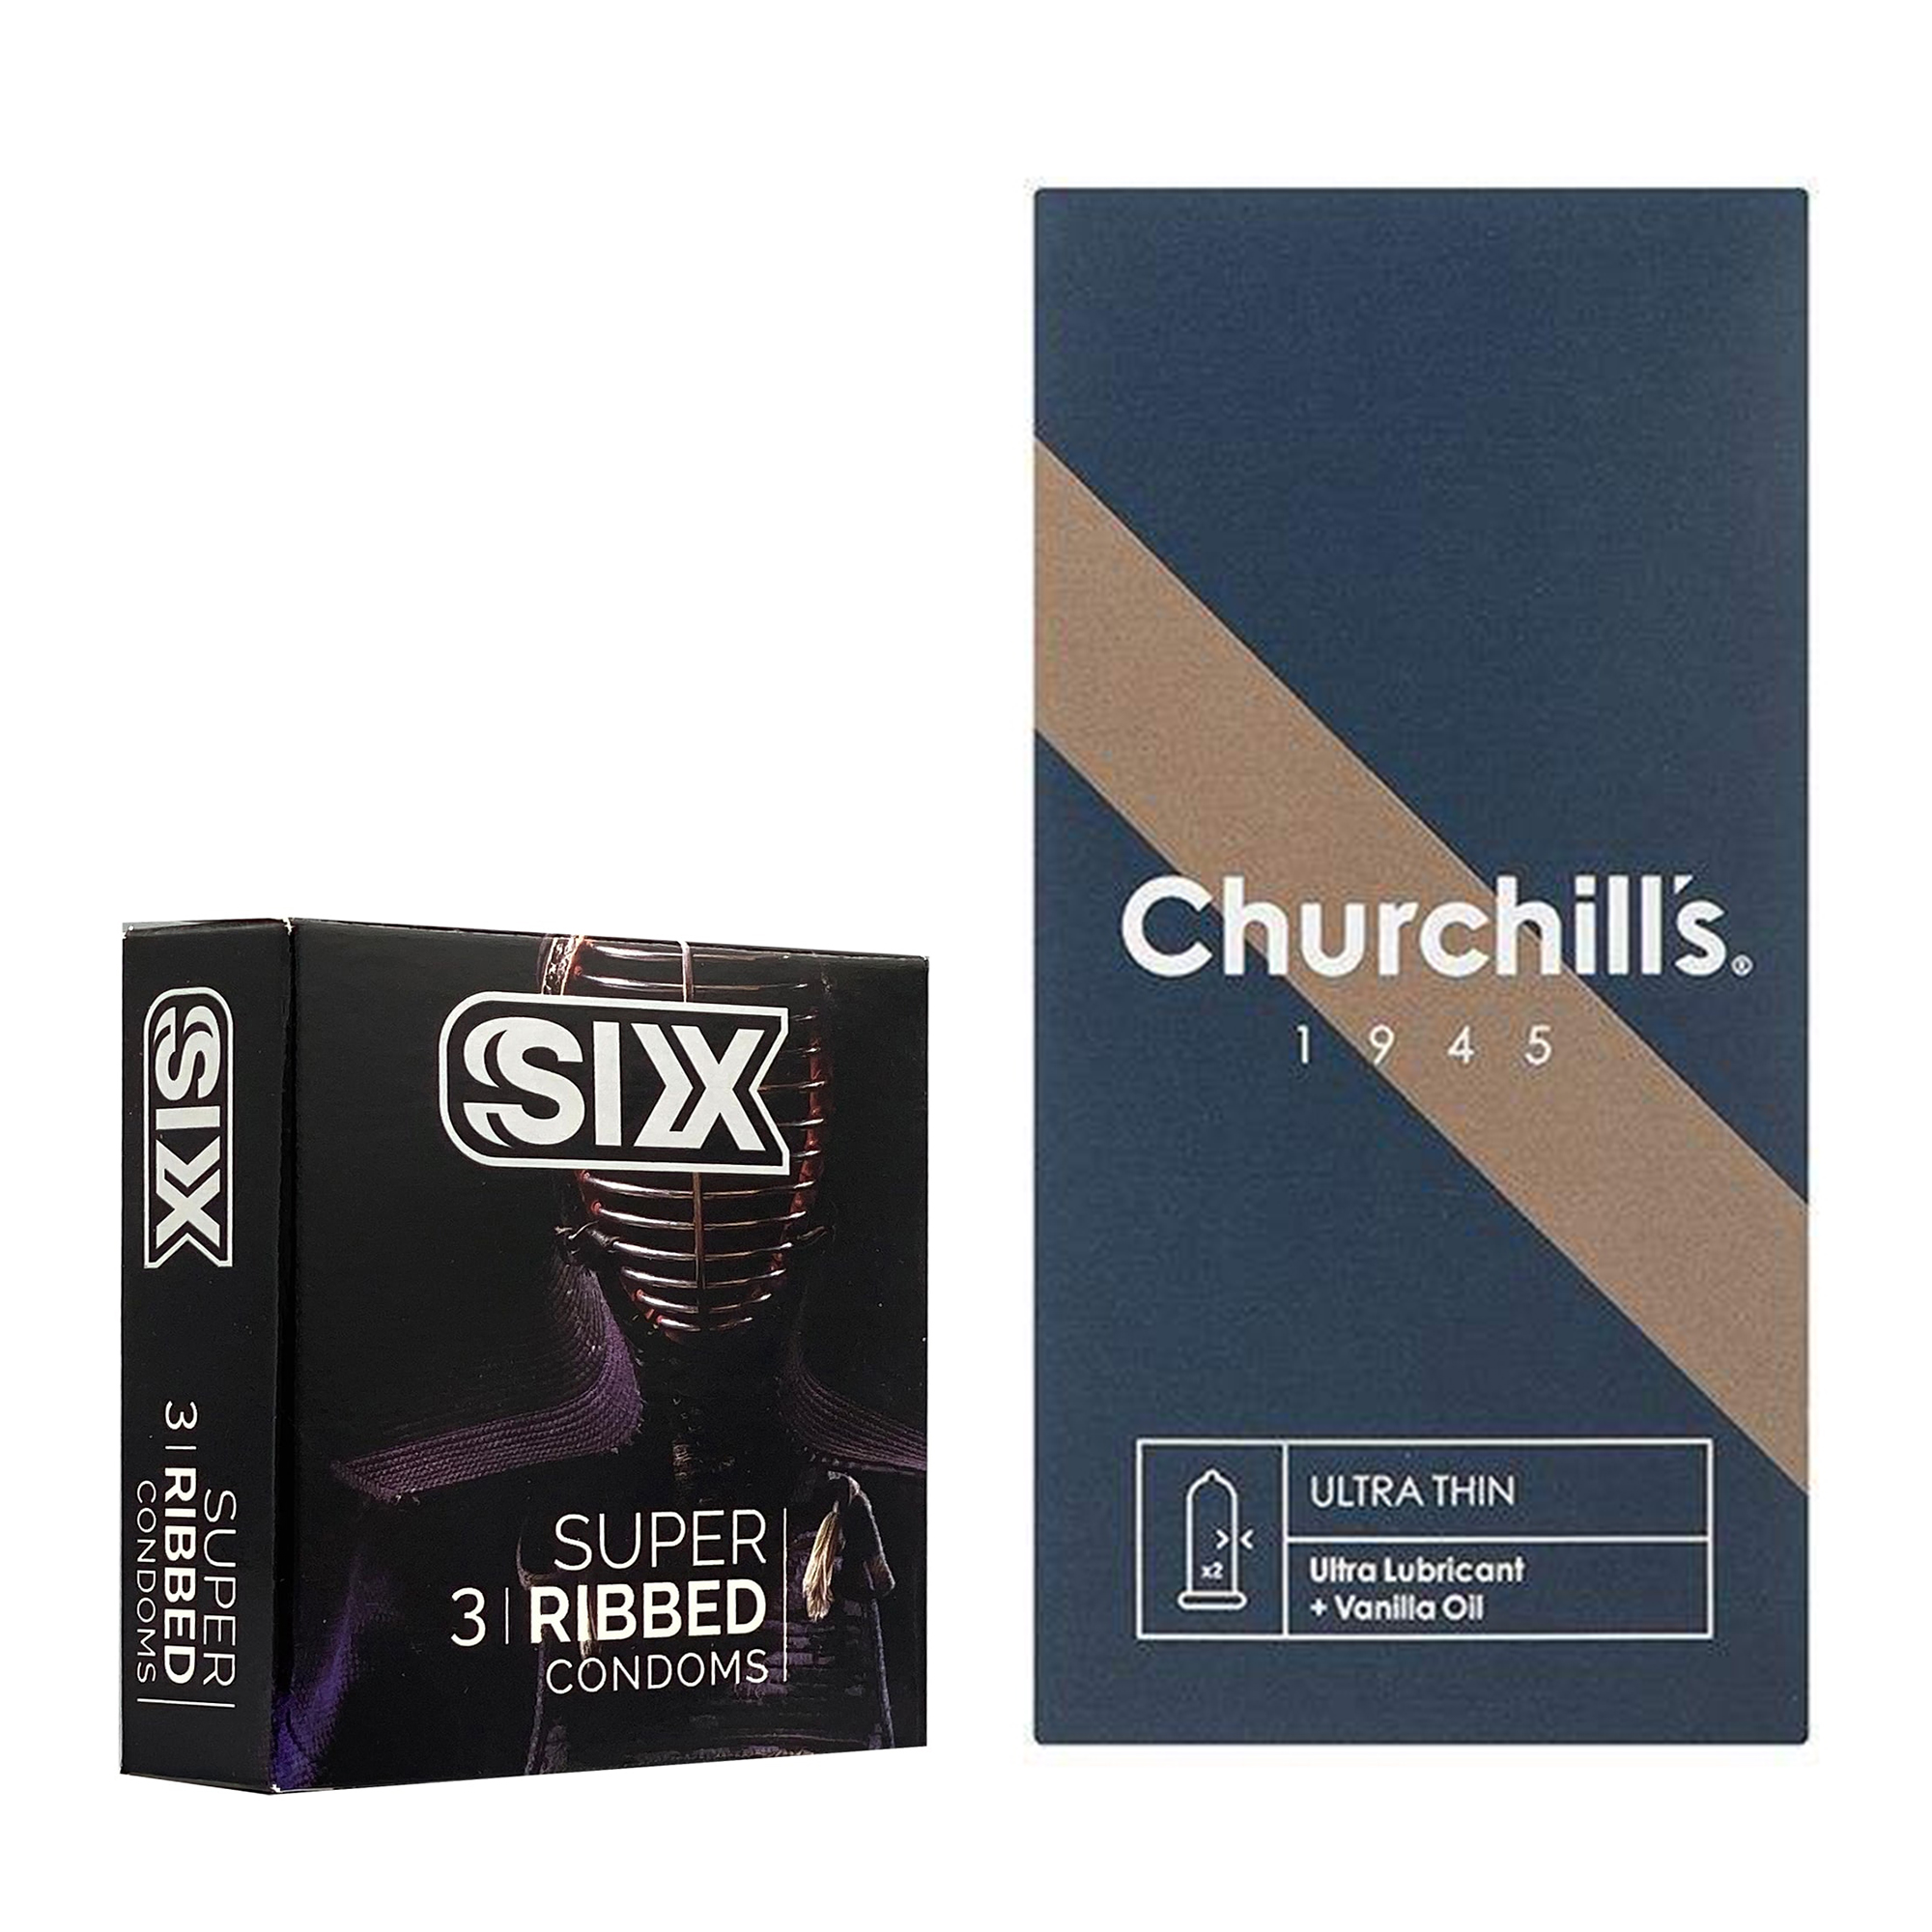 کاندوم چرچیلز مدل Ultra Thin بسته 12 عددی به همراه کاندوم سیکس مدل شیاردار بسته 3 عددی 